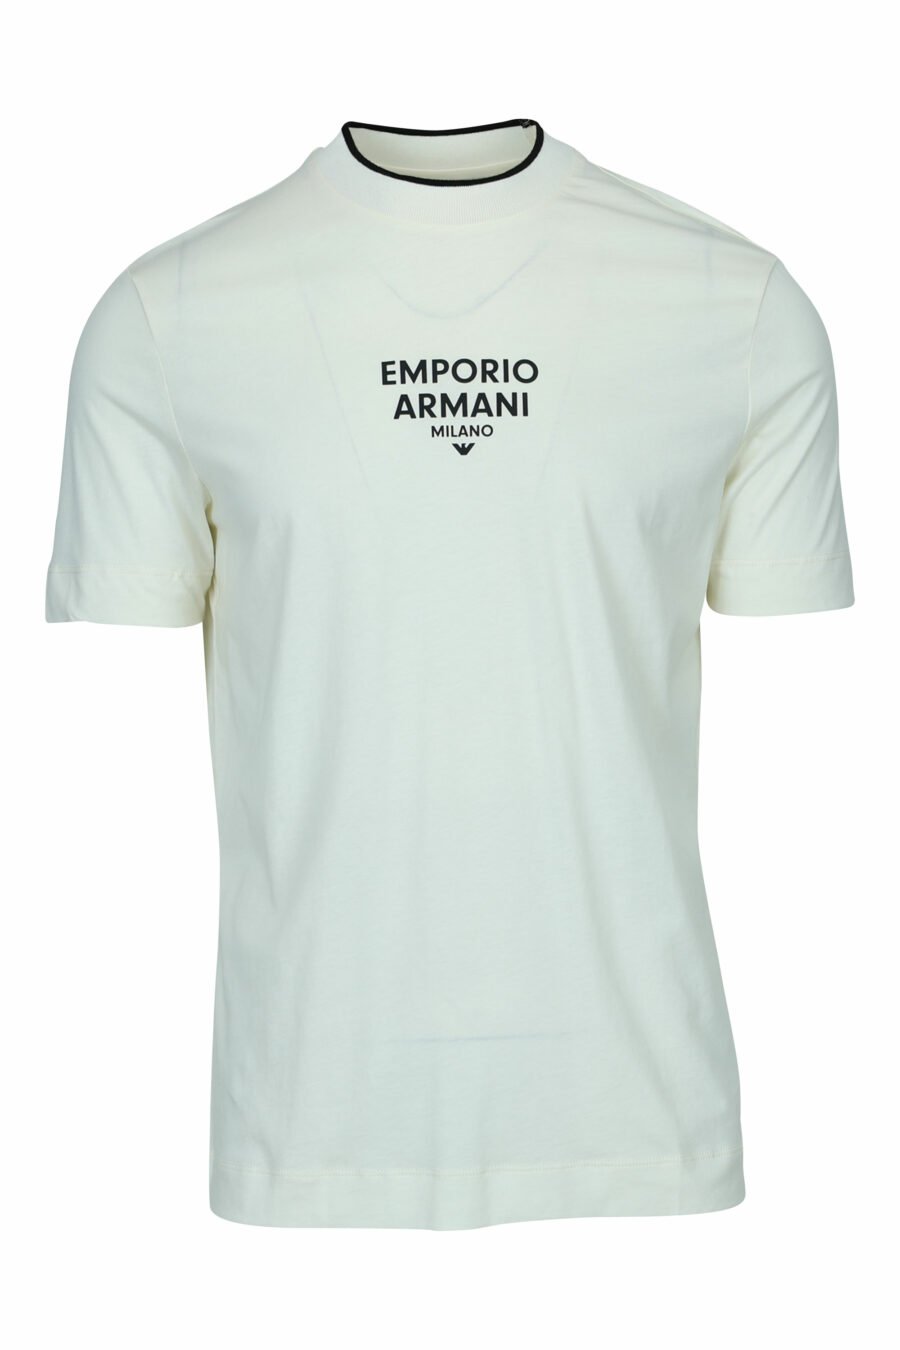 T-shirt crème avec minilogo "emporio" centré - 8057970991724